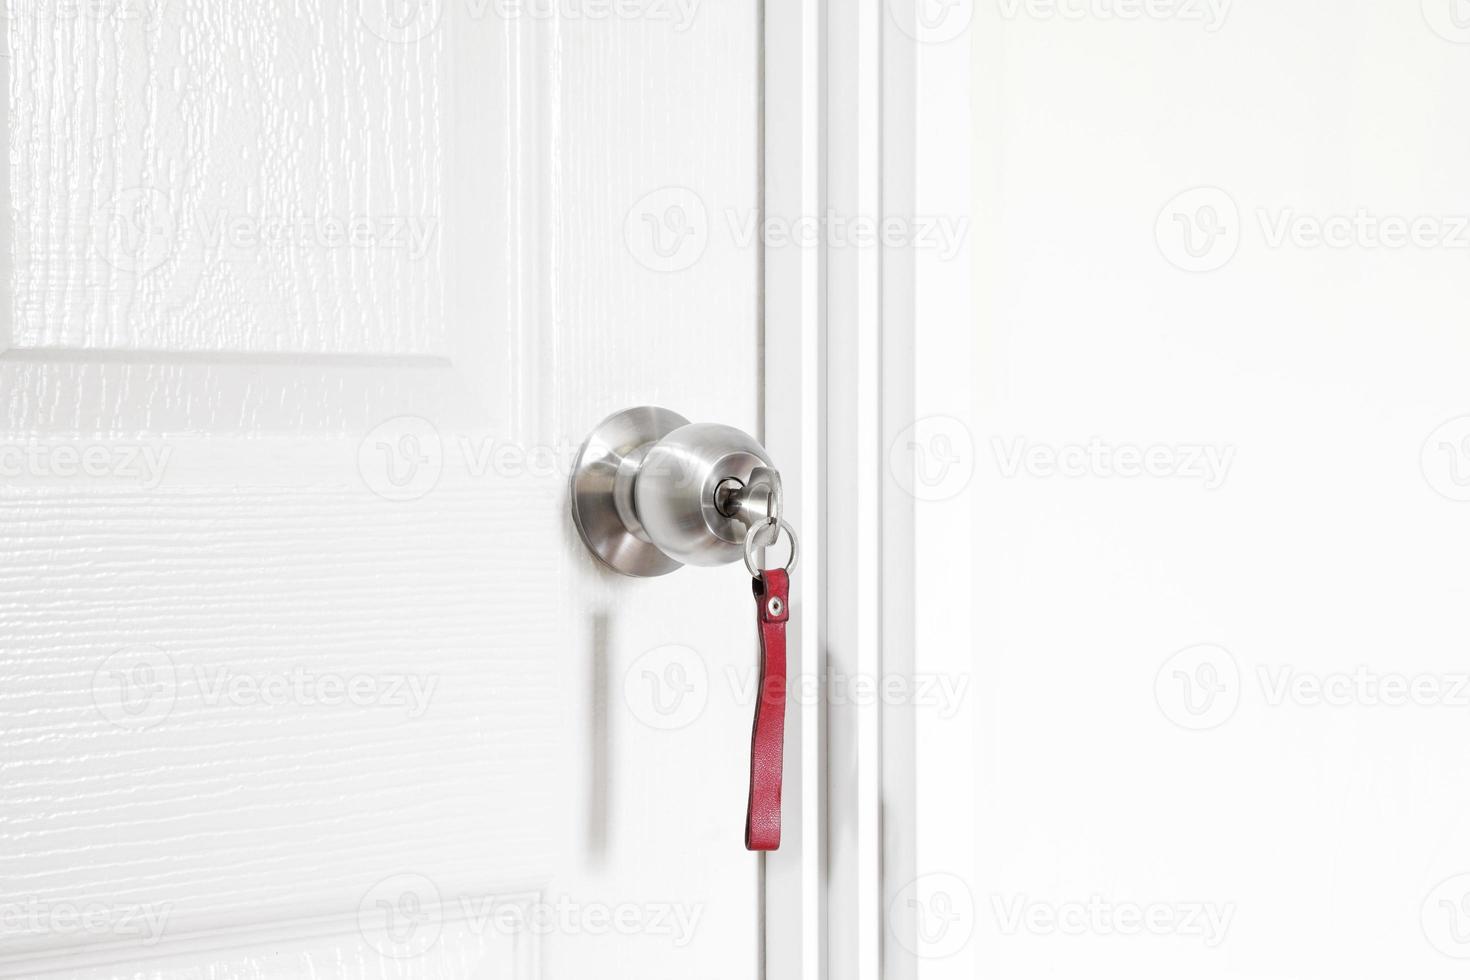 installation d'un bouton de verrouillage avec clé à la porte à l'intérieur de la maison photo